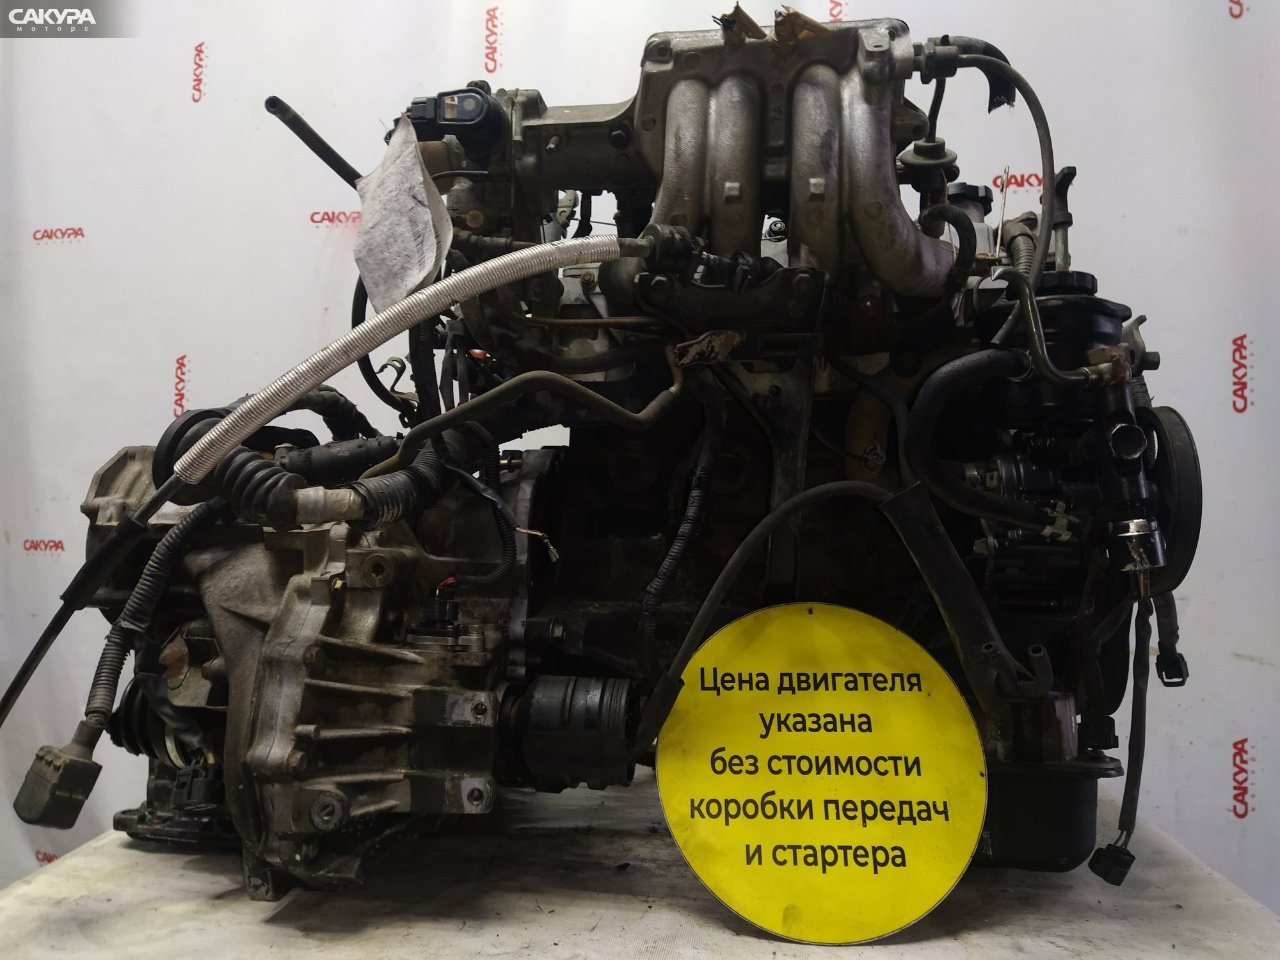 Двигатель Toyota Carina AT191 7A-FE: купить в Сакура Красноярск.